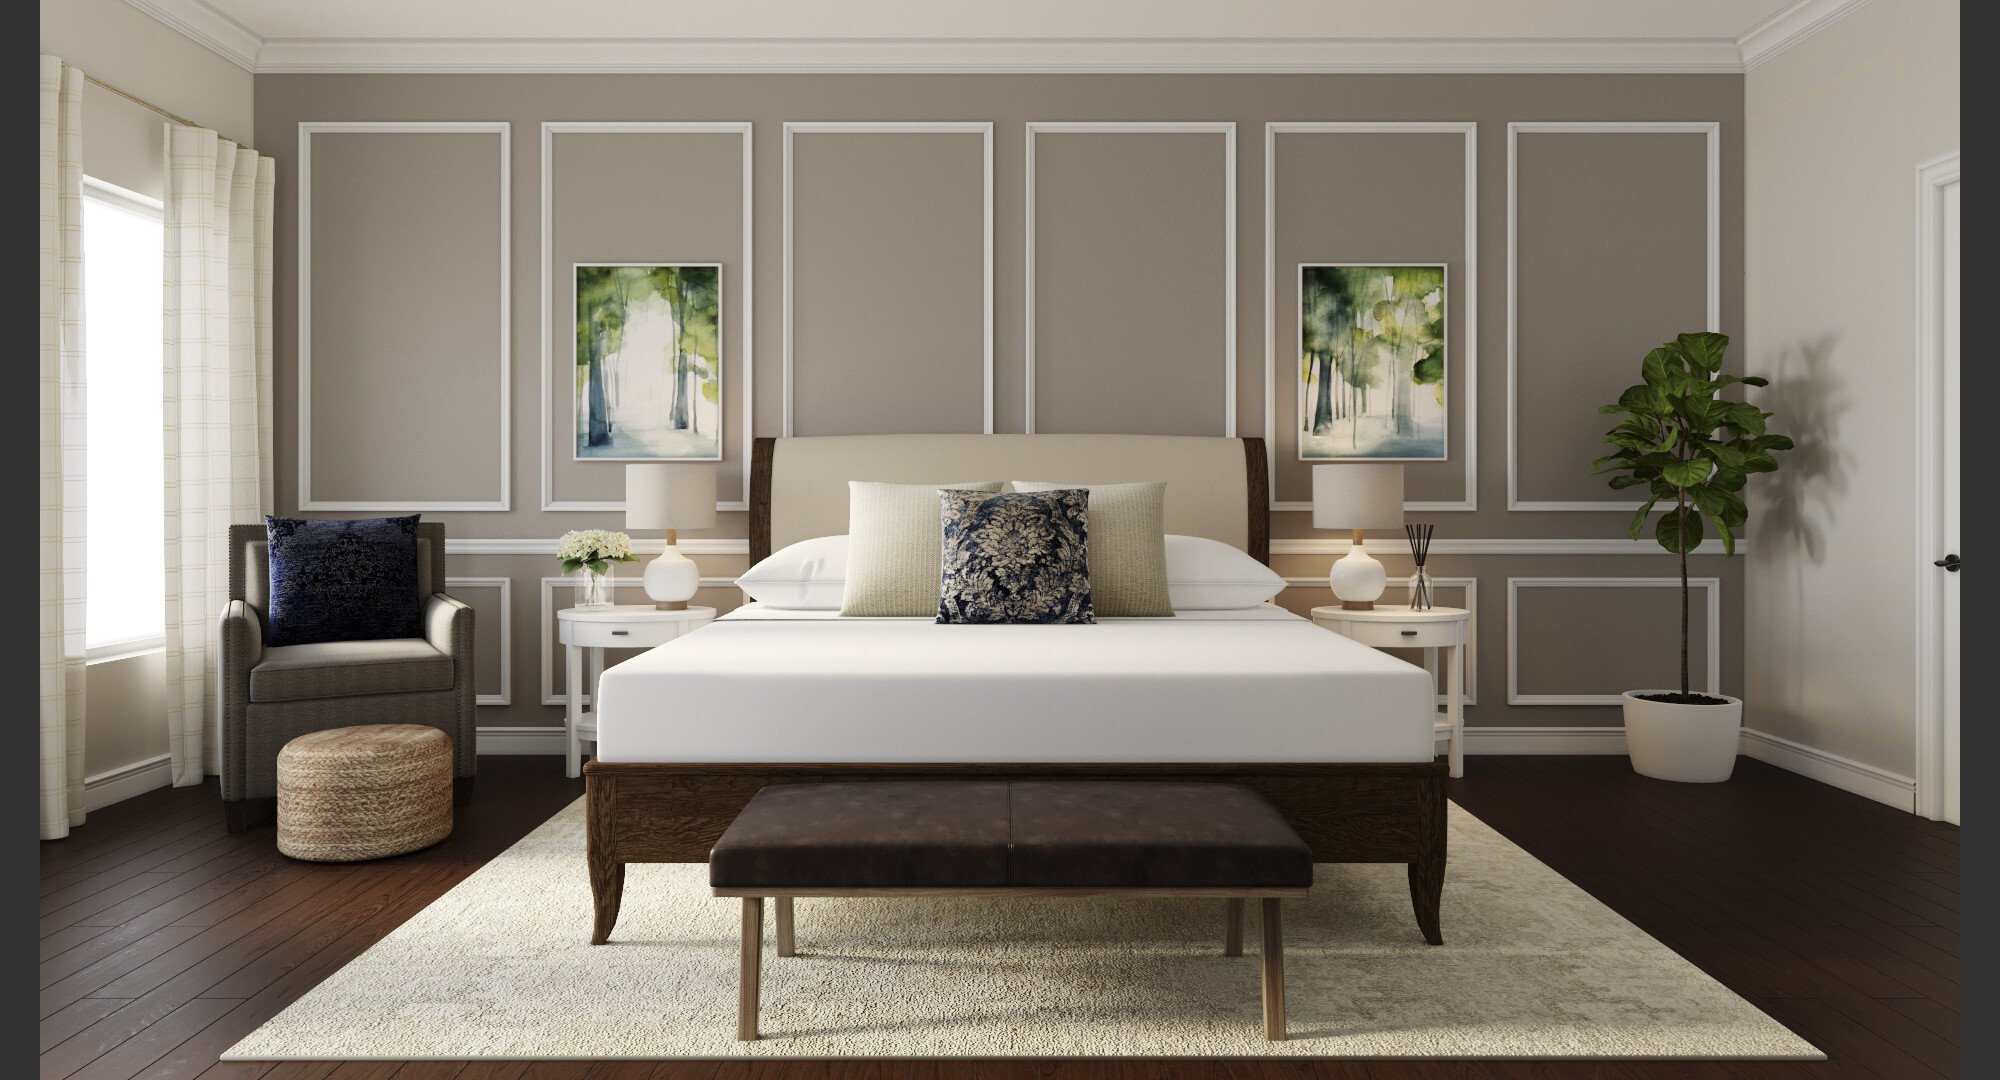 Online Bedroom Design interior design samples